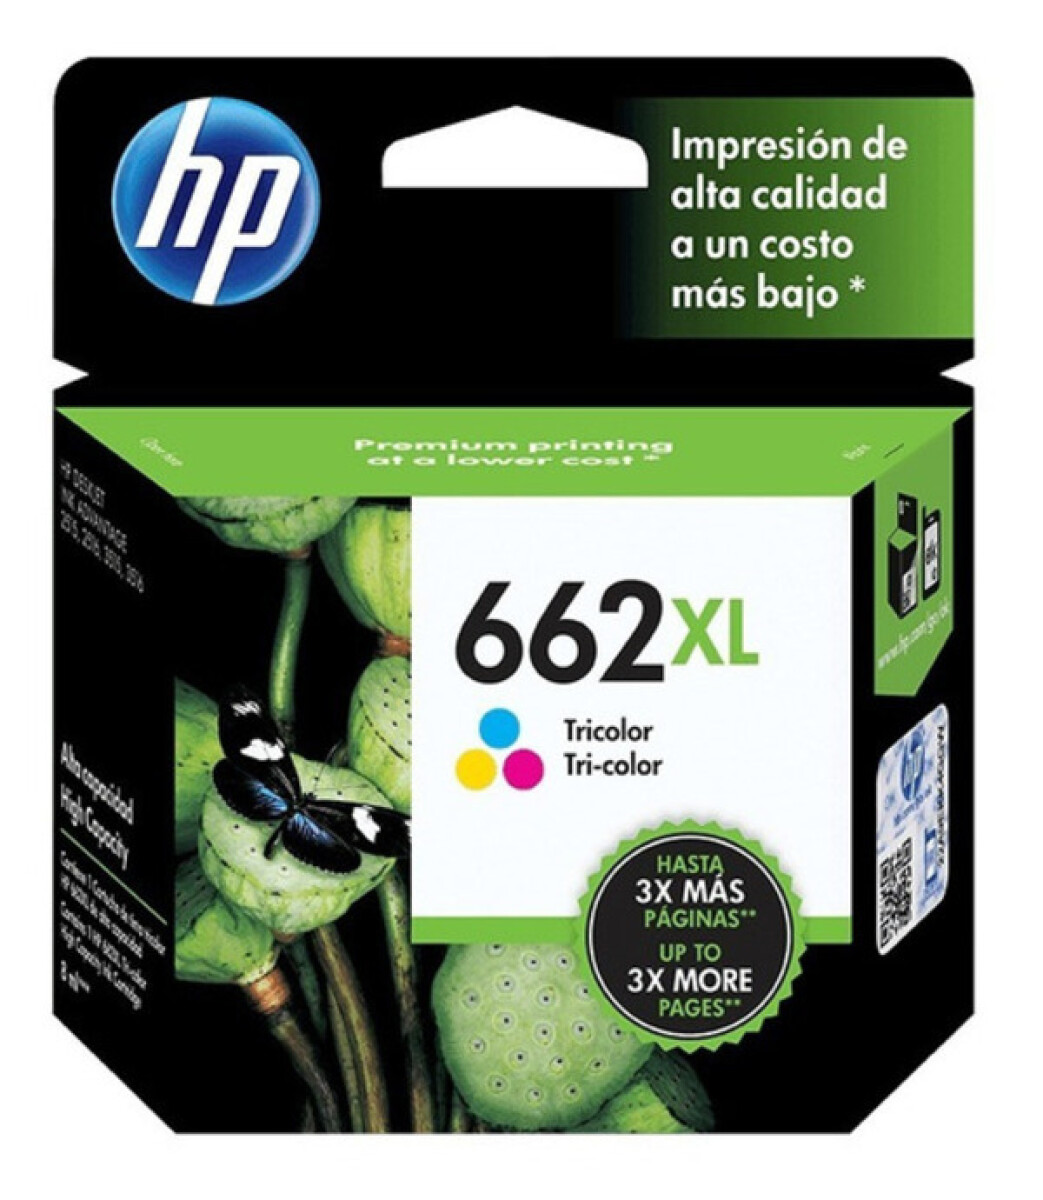 HP CZ106AL (662XL) COLOR 1515/3545/2645 300CPS - Hp Cz106al (662xl) Color 1515/3545/2645 300cps 